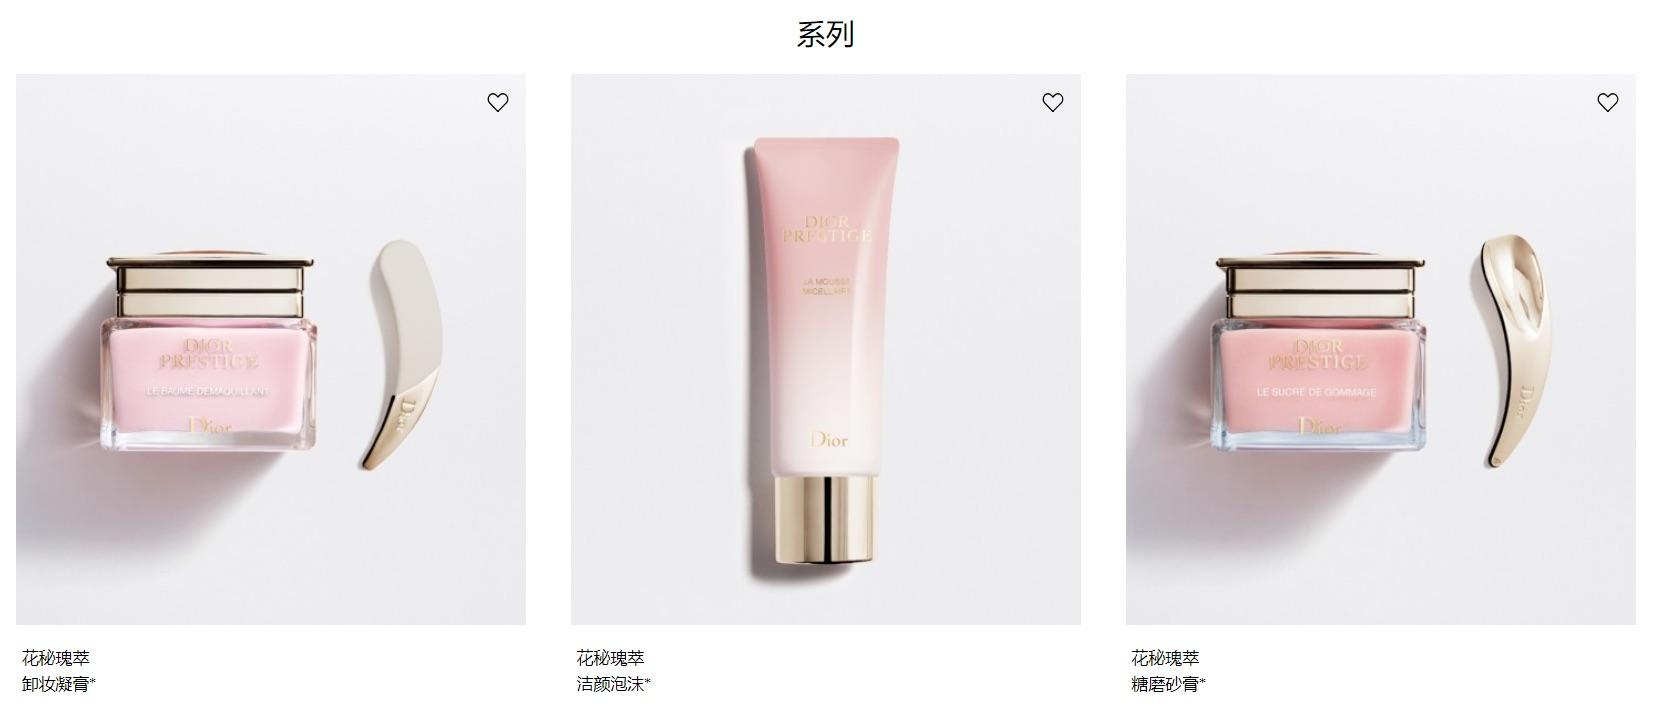 朗标为迪奥护肤系列Prestige创造全新中文名称“迪奥花秘瑰萃”